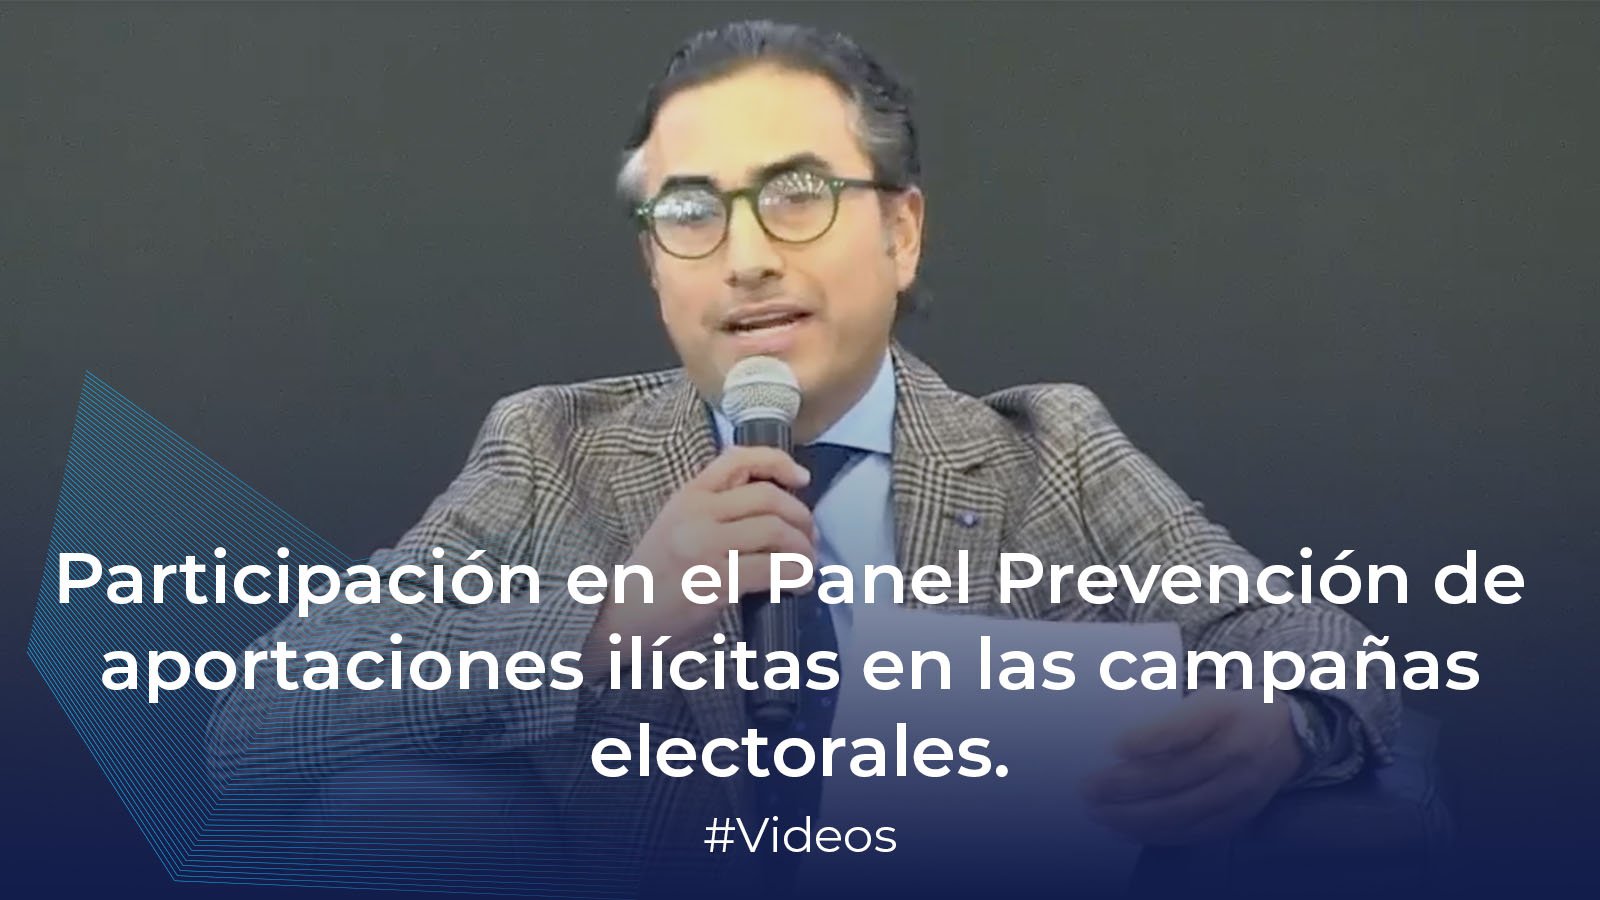 - Participación en el Panel Prevención de aportaciones ilícitas en las campañas electorales, Dr. Pedro Rubén Torres Estrada